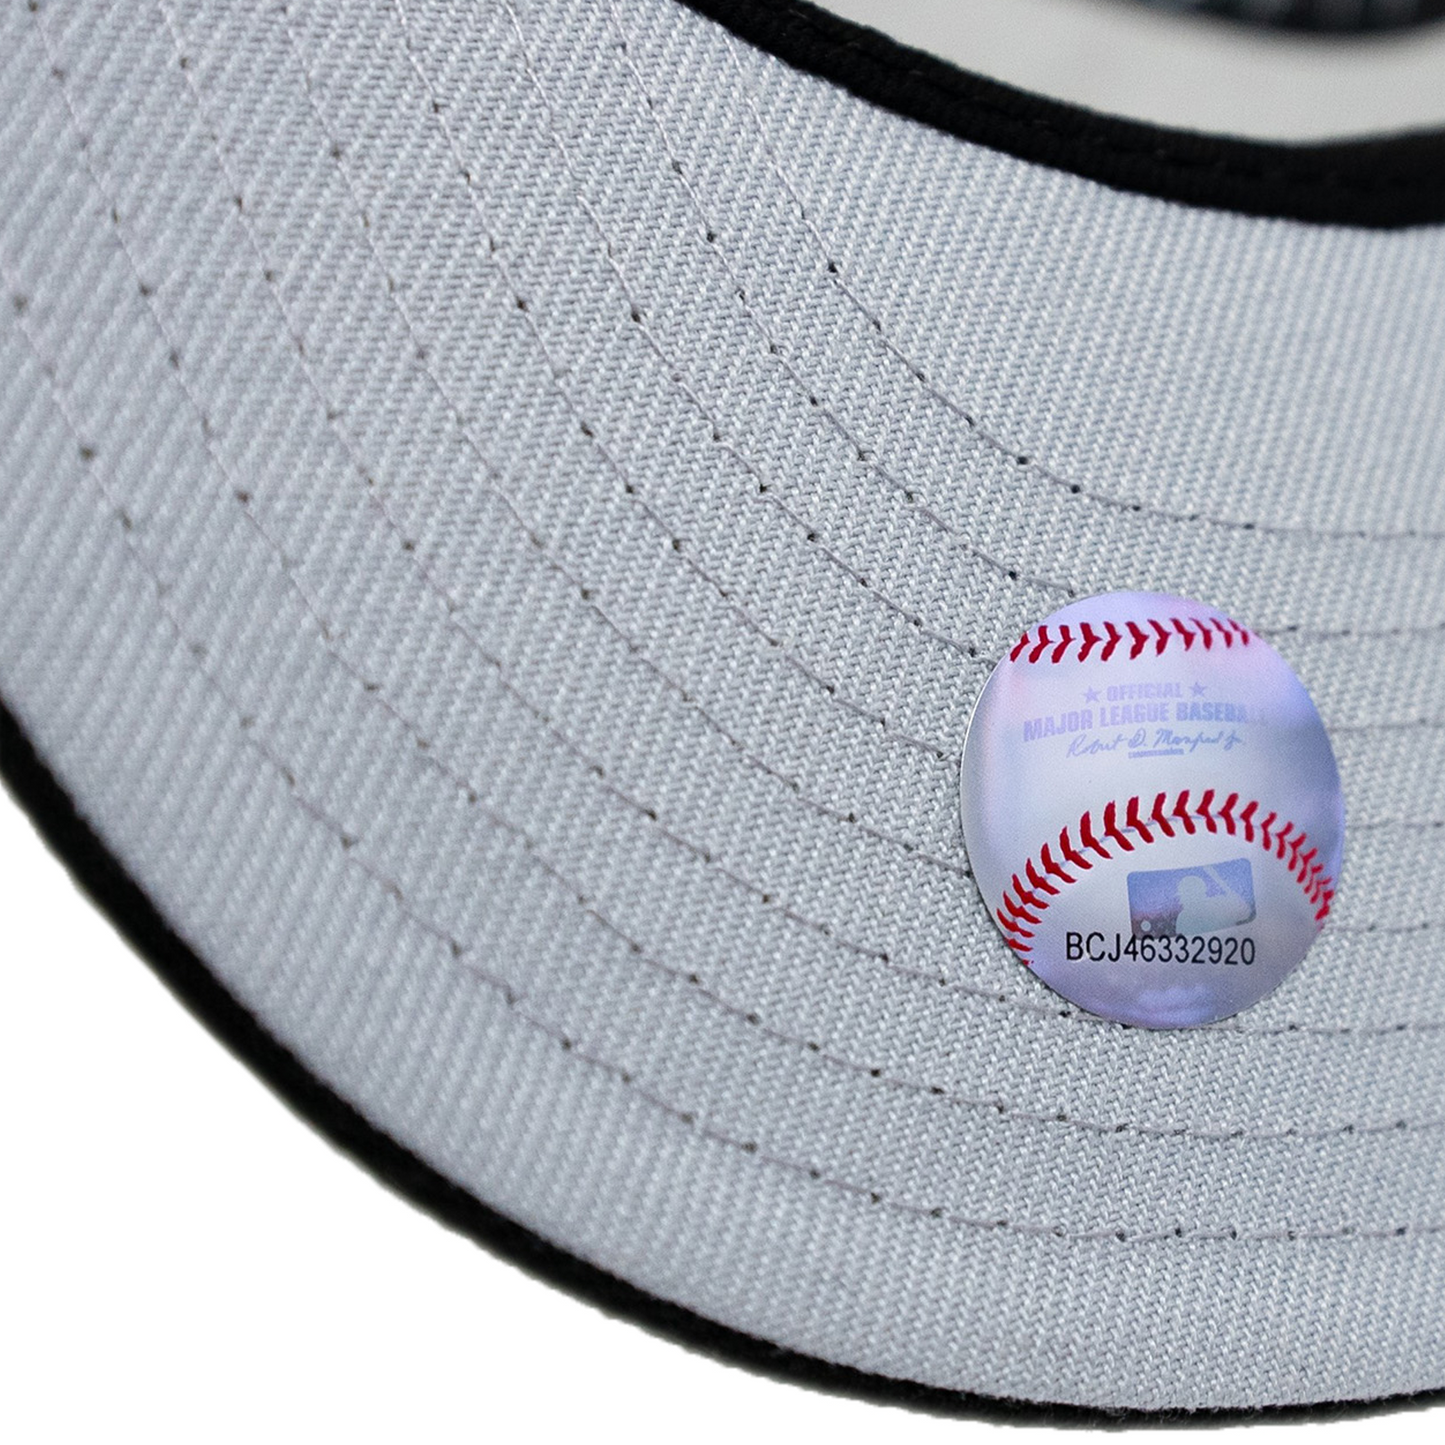 New Era Chicago White Sox 59FIFTY Hat - Black/ Graphite